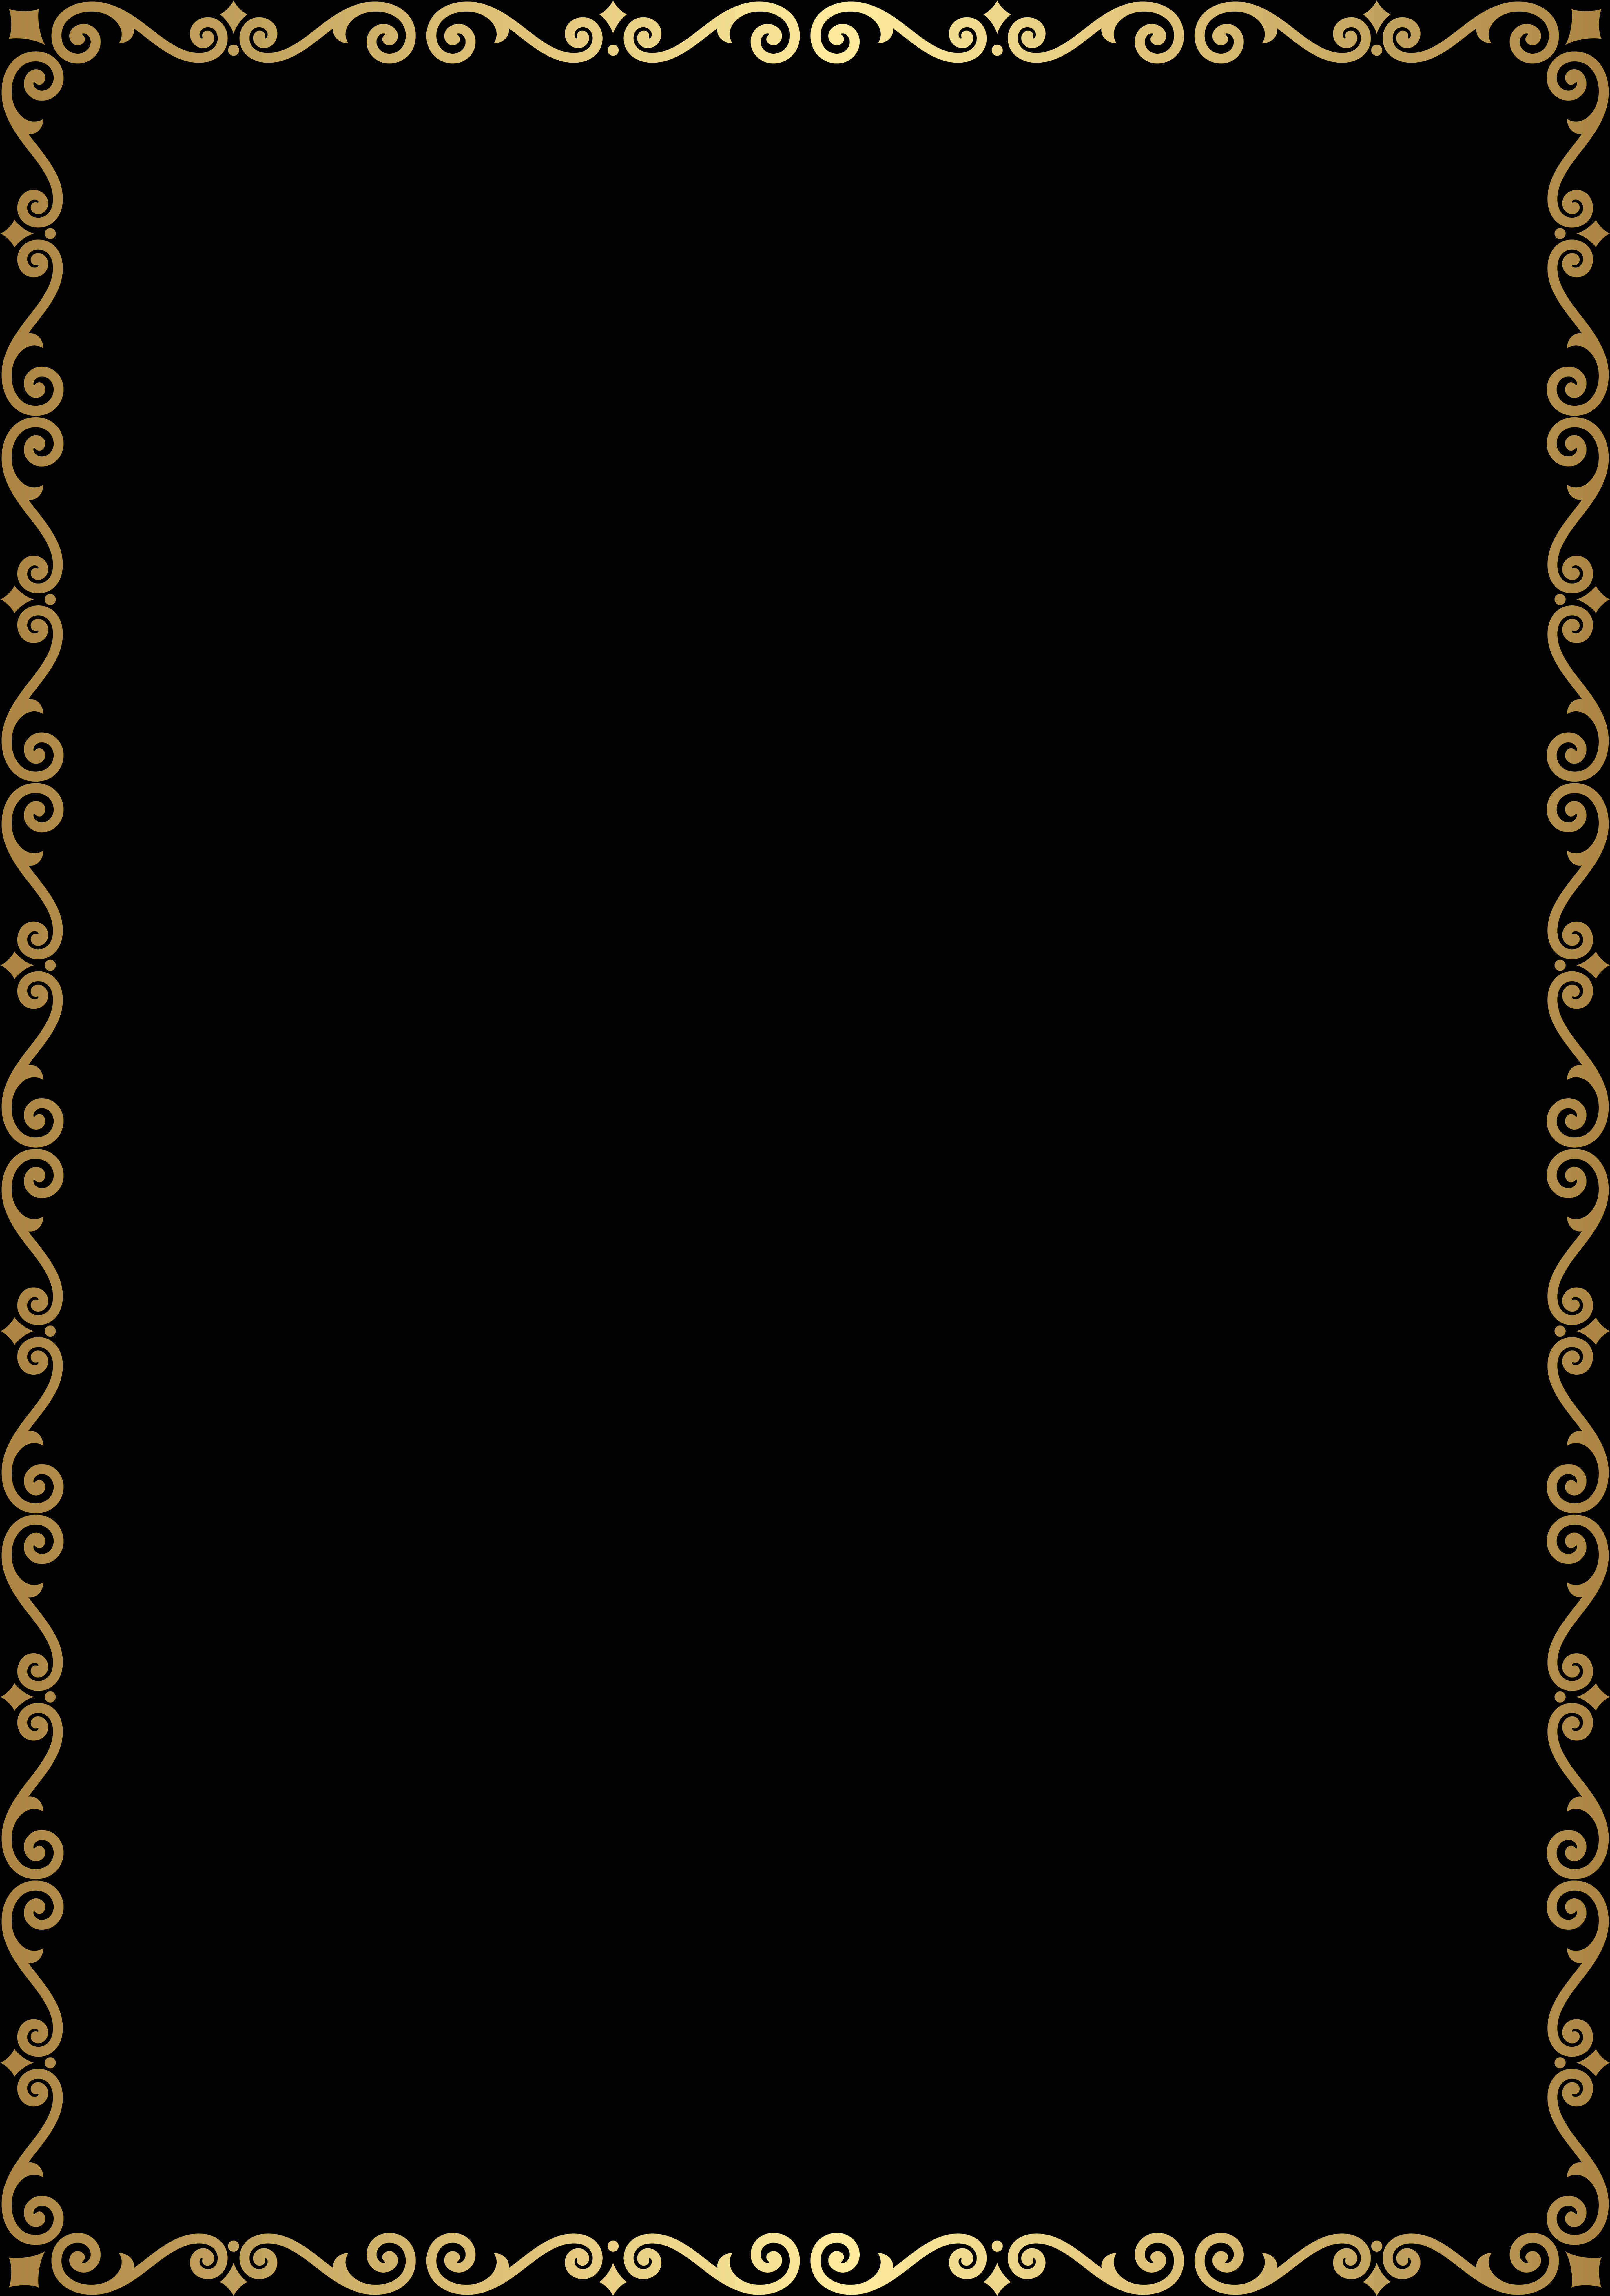 Download Elegant Golden Scrollwork Frame | Wallpapers.com